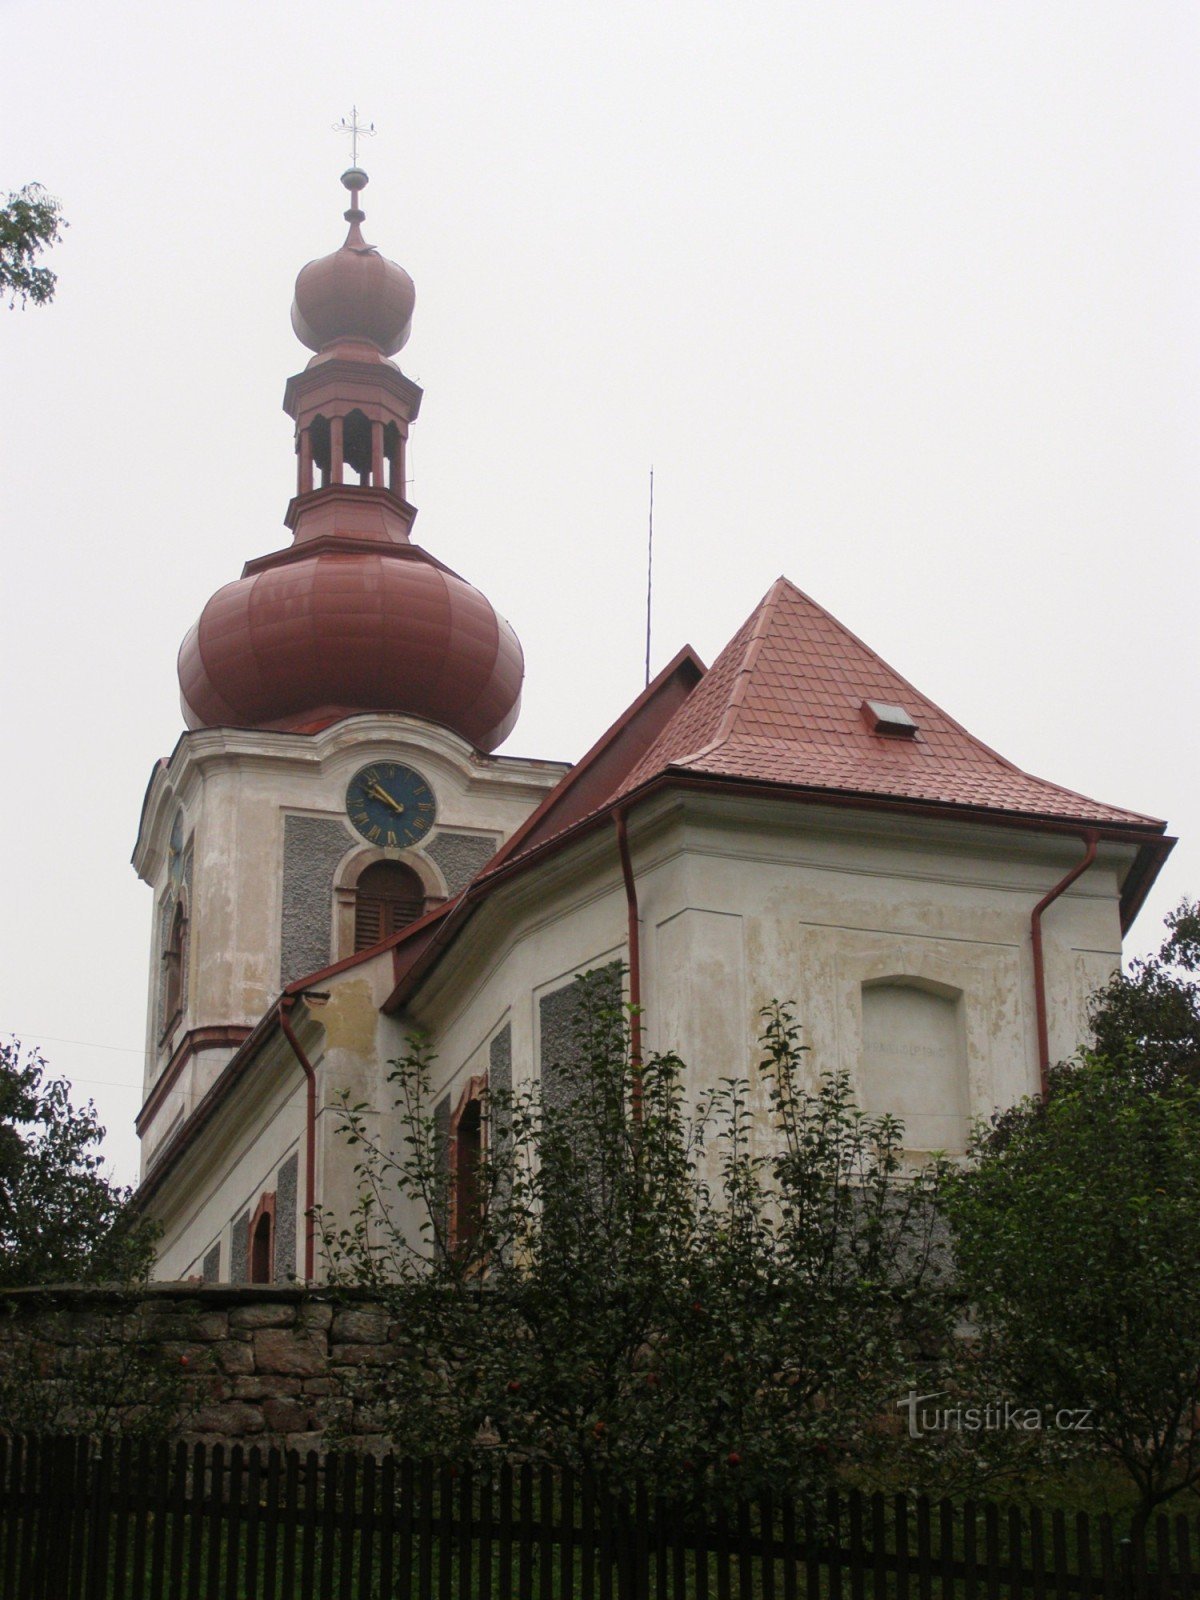 Nová Ves nad Popelkou - église de St. Procope